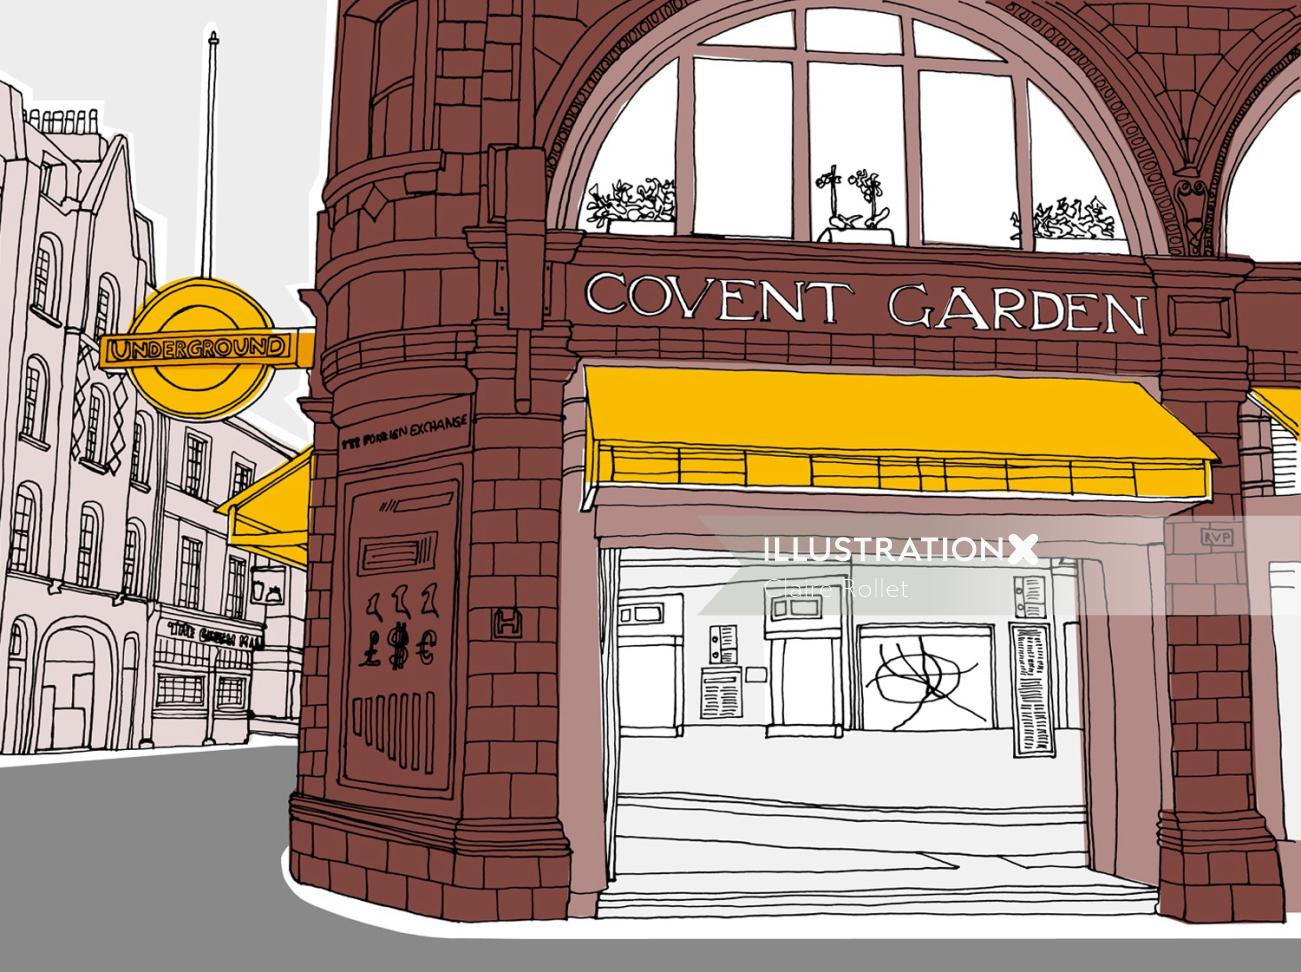 Ilustración subterránea del Covent Garden de Londres por Claire Rollet